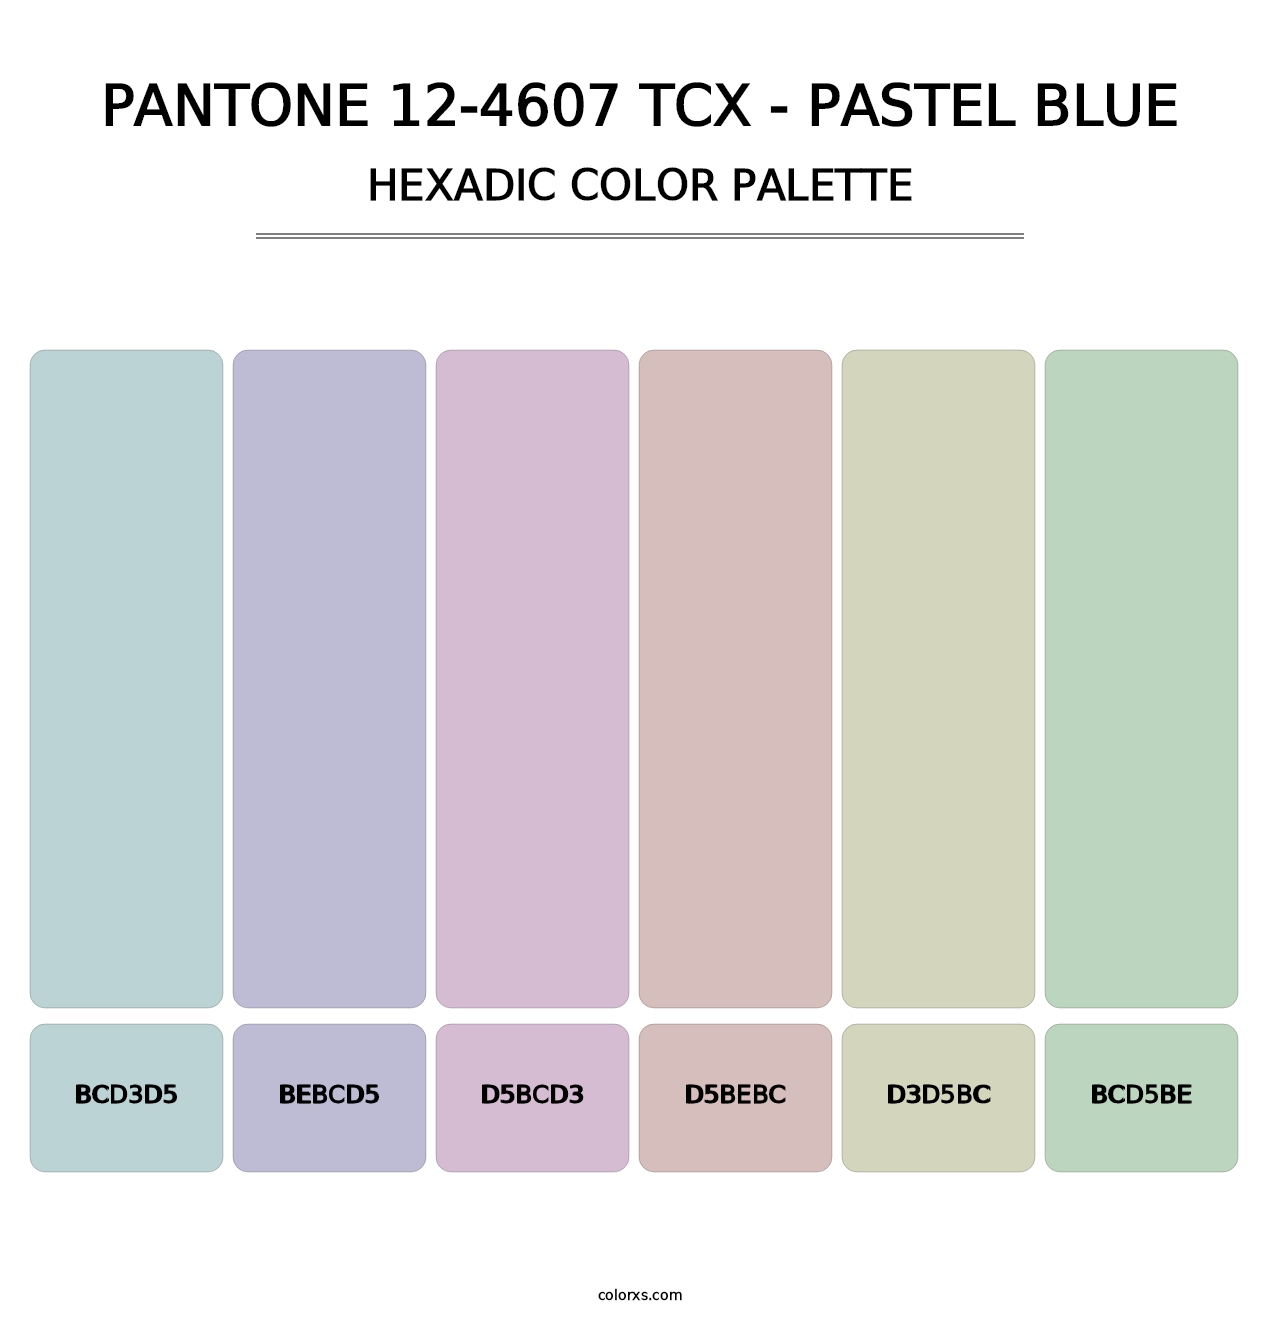 PANTONE 12-4607 TCX - Pastel Blue - Hexadic Color Palette